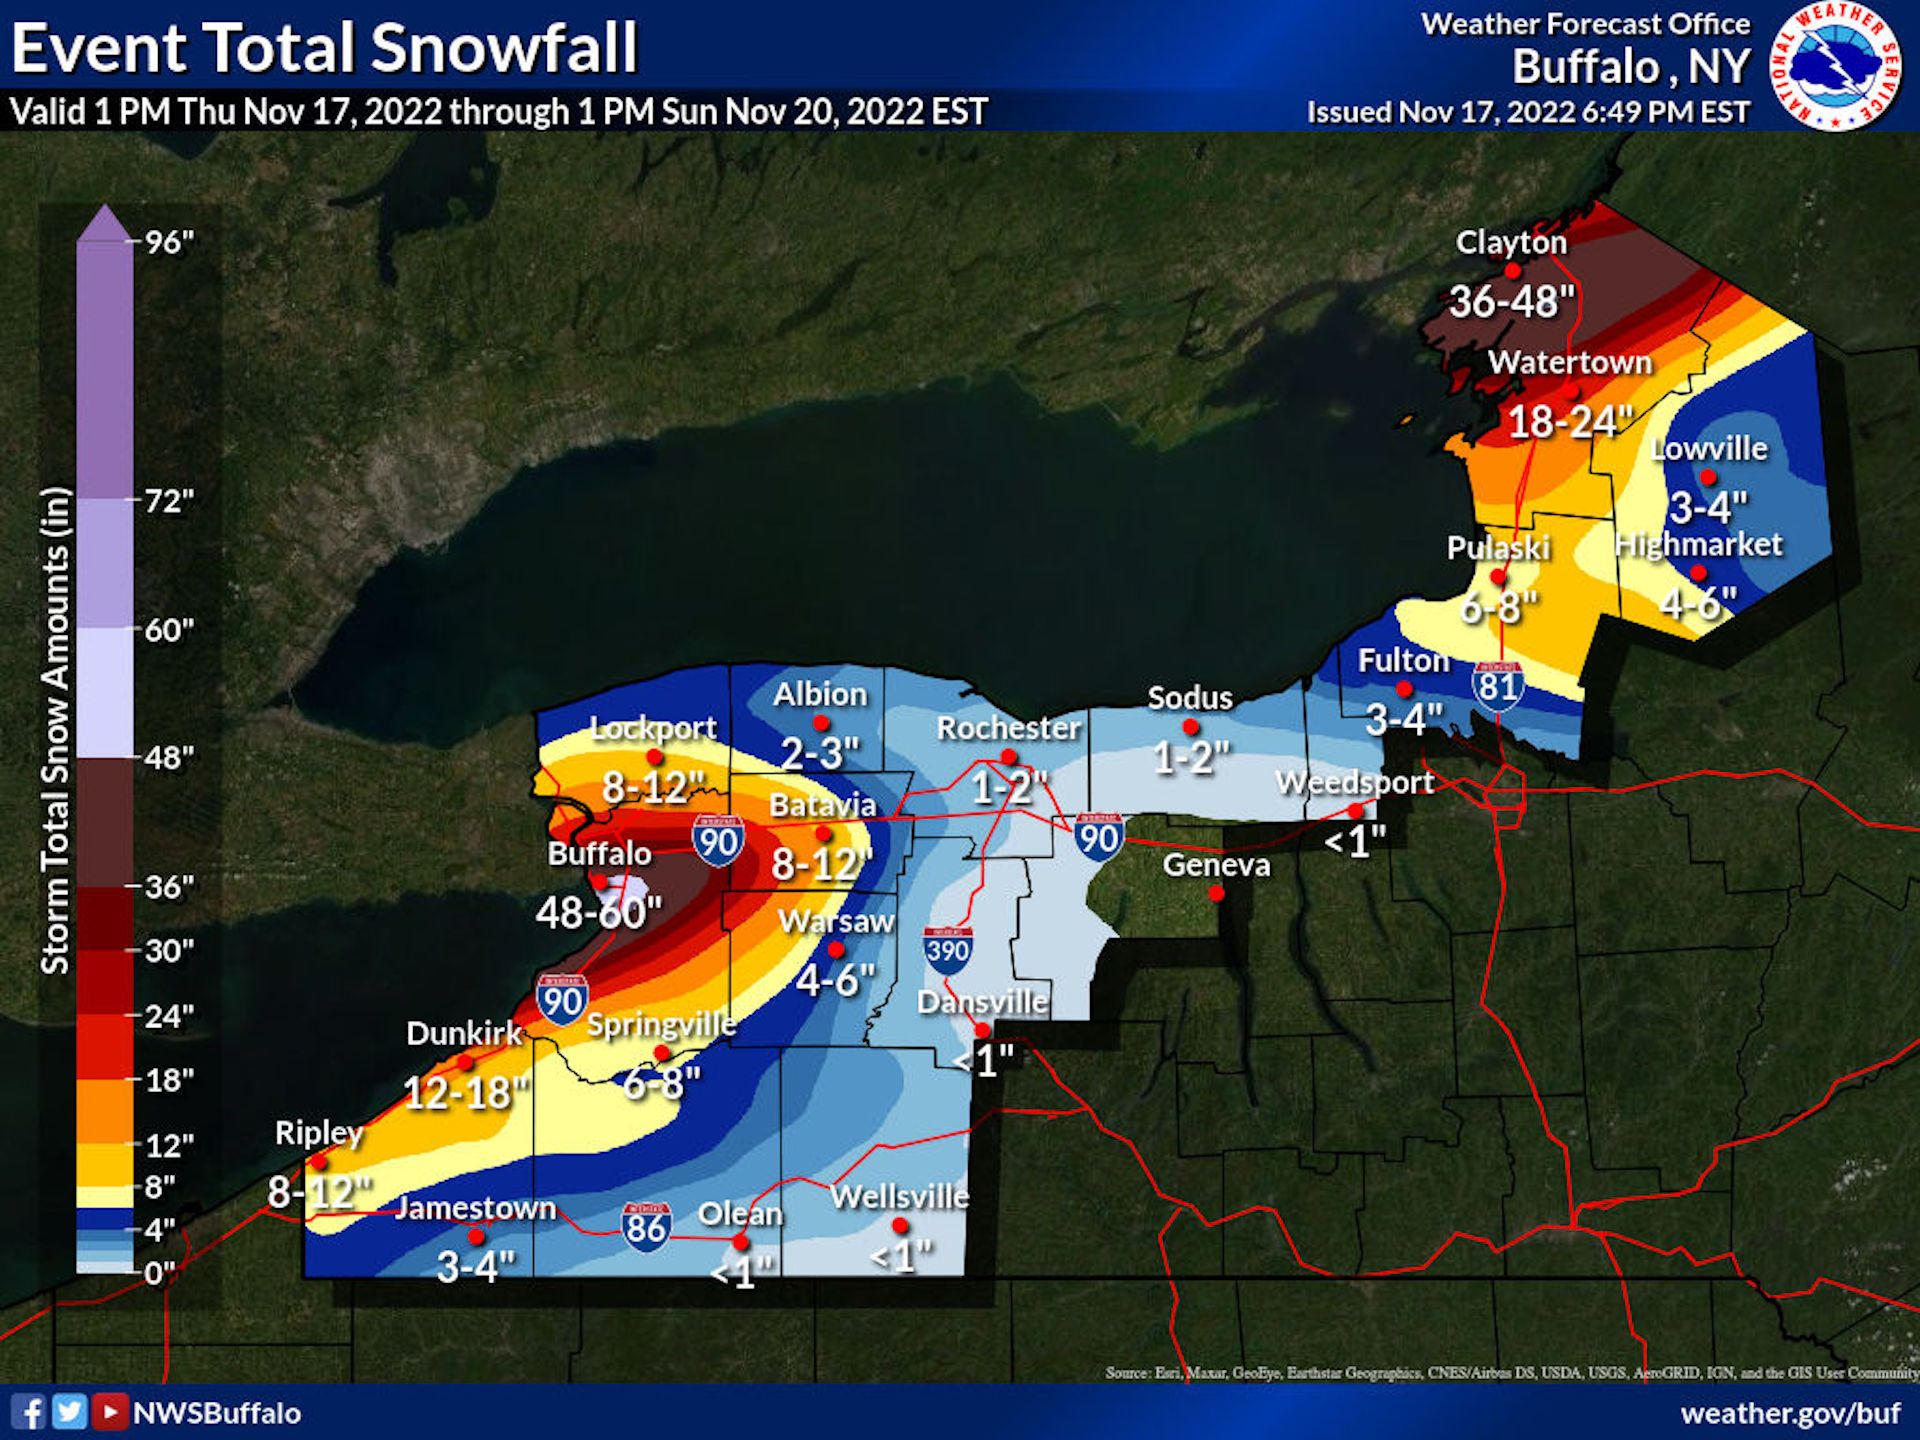 Total snowfall forecast to fall in Buffalo, NY through Sunday.